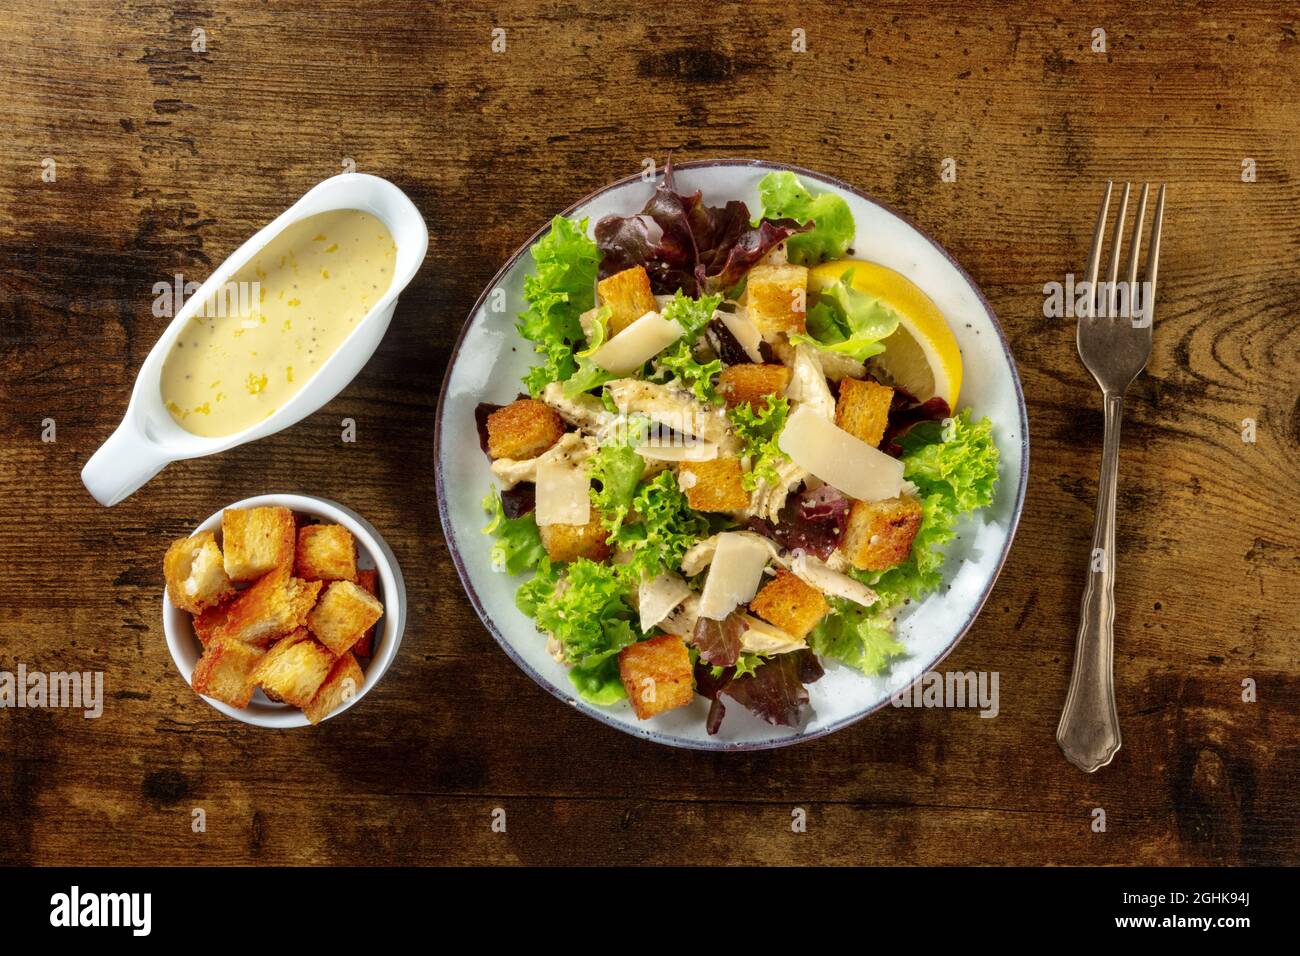 Salade César au poulet, plan plat avec sauce classique à base de mayonnaise et croûtons, sur fond de bois rustique foncé Banque D'Images